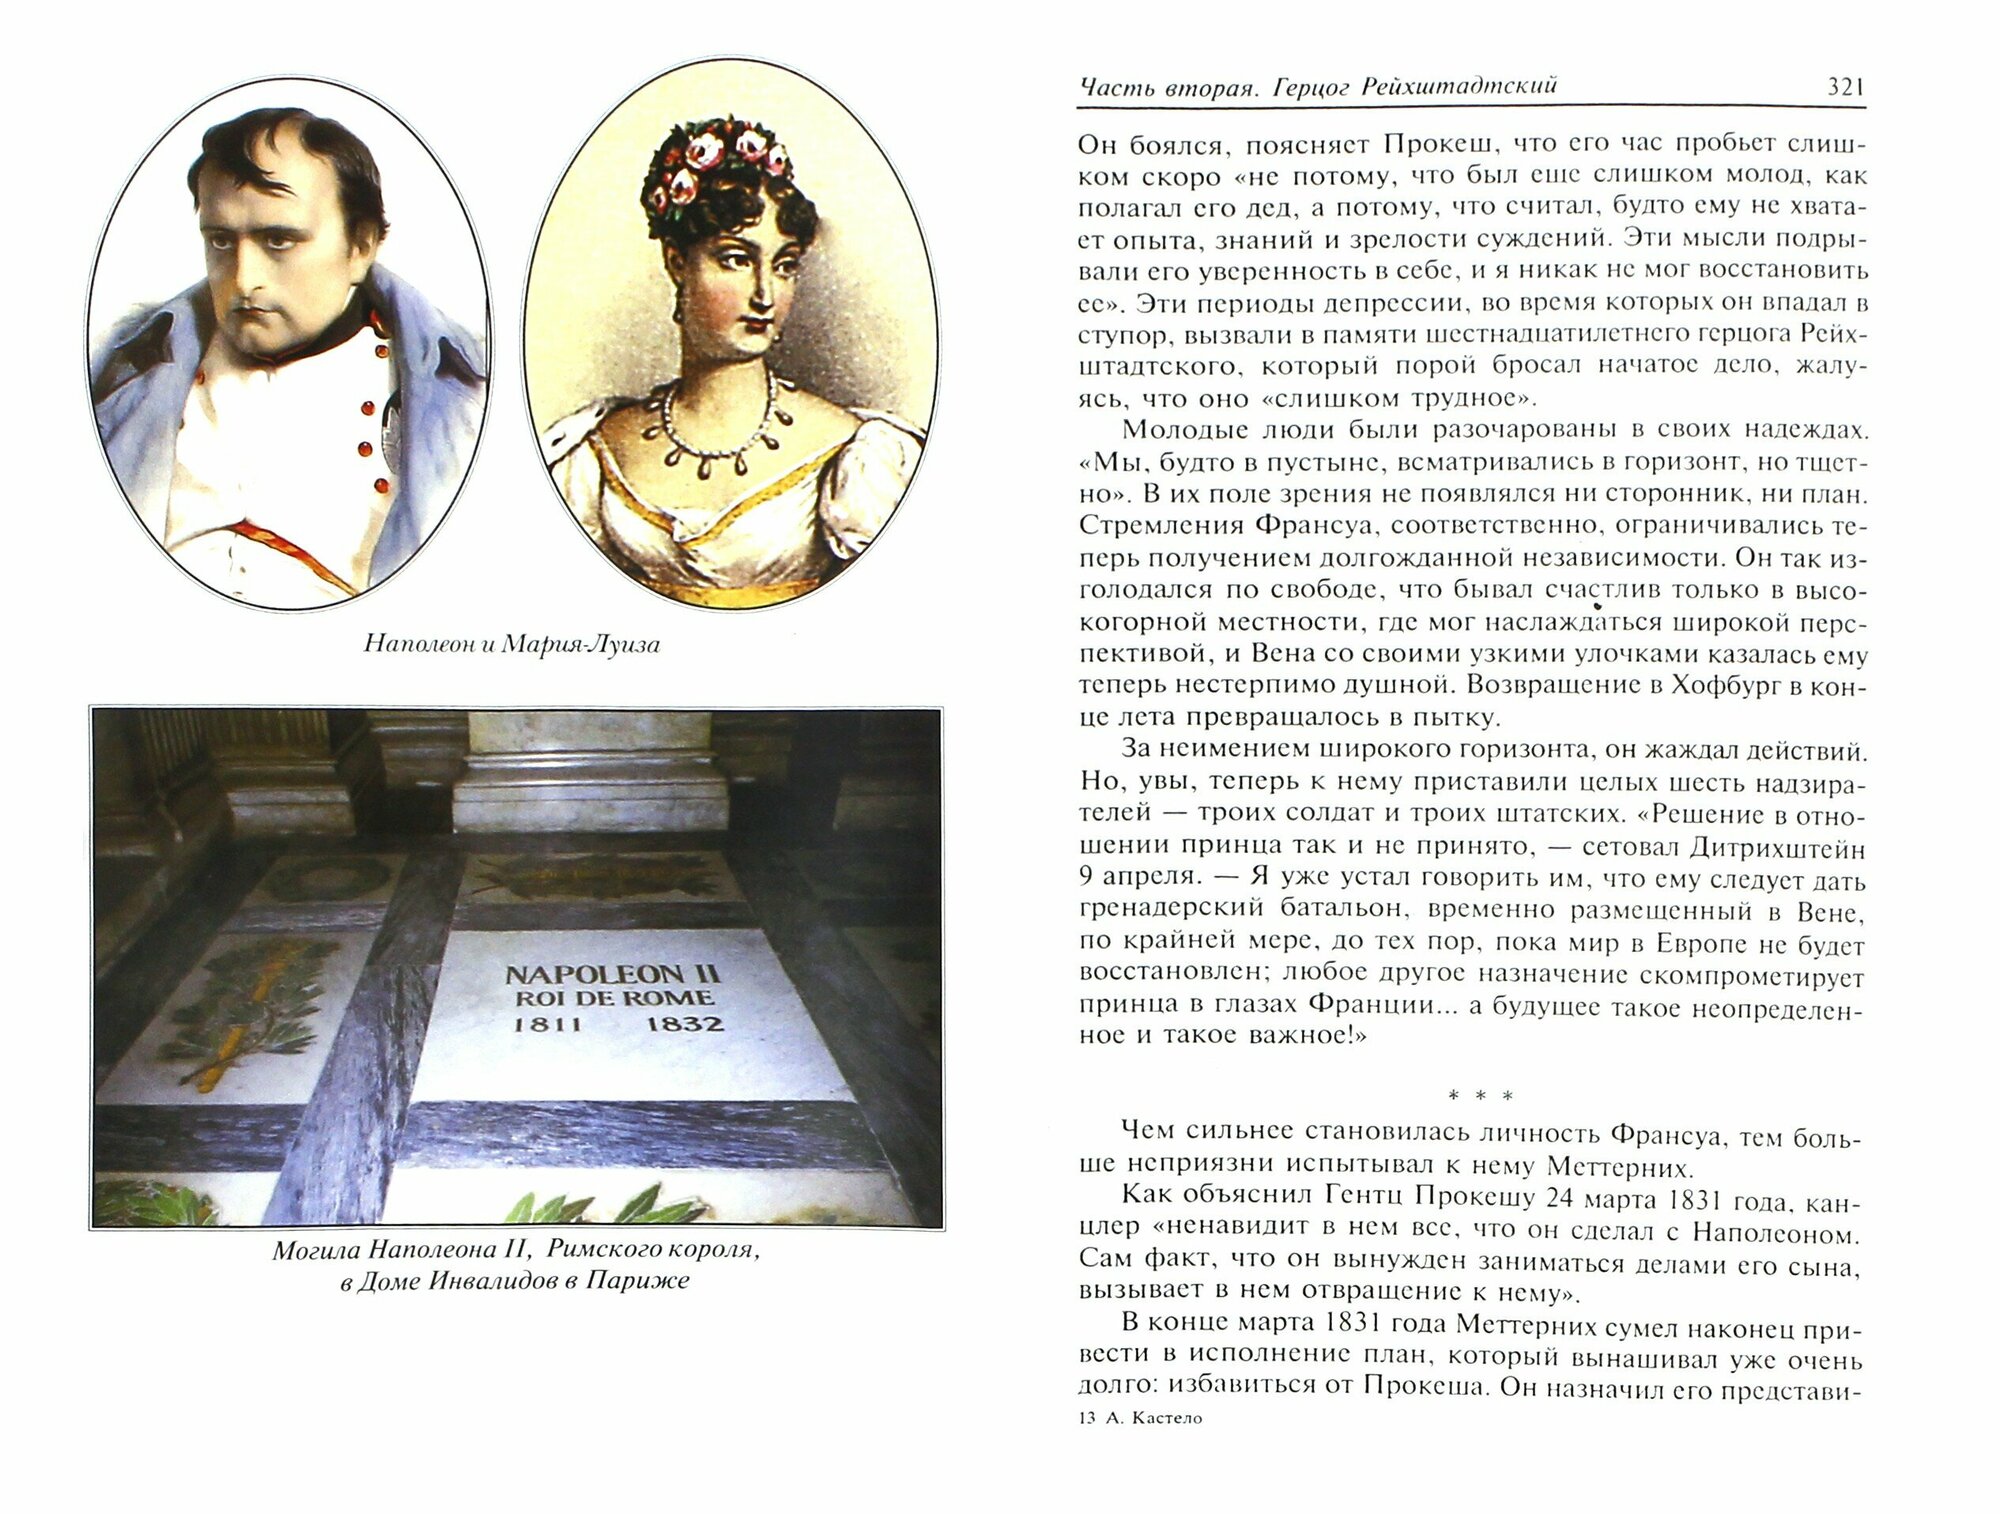 Сын Наполеона: биография (Кастело АндреФ; Ростан Эдмон) - фото №6